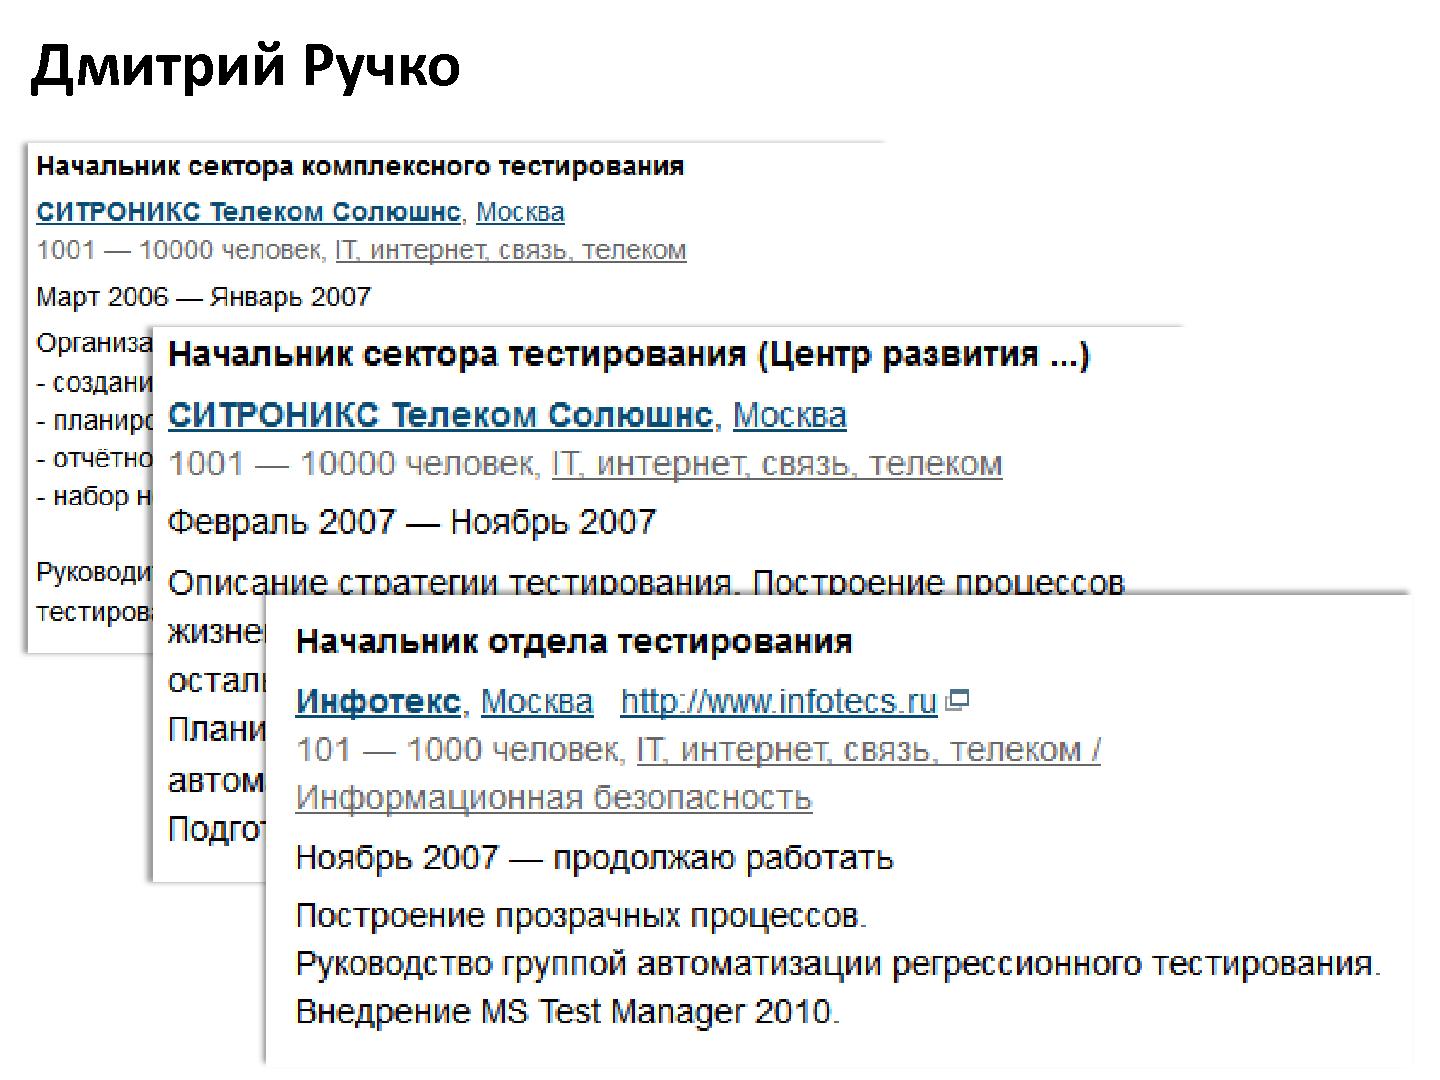 Файл:Интервью с Дмитрием Ручко (для SQADays, 2011-07-27).pdf